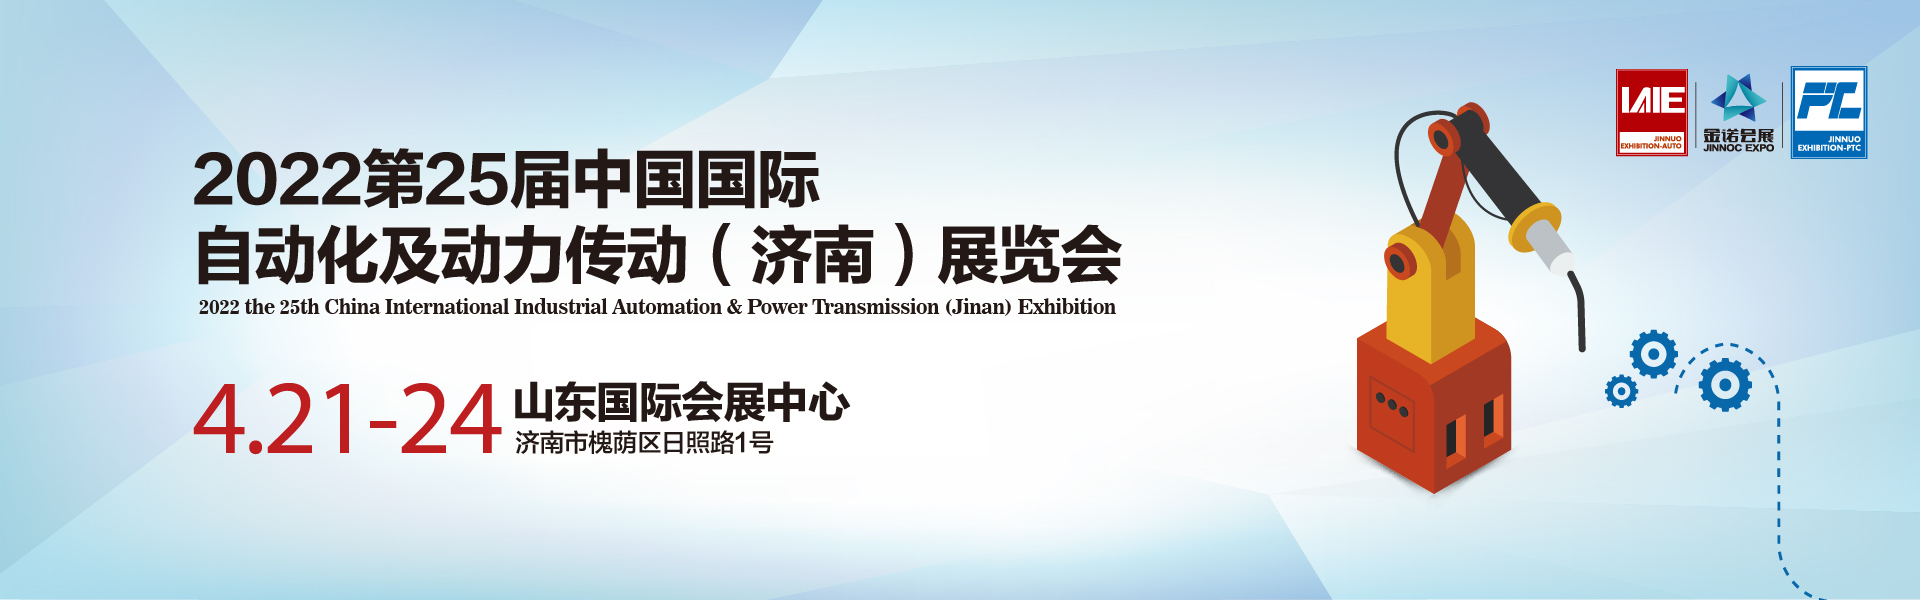 第25届中国国际工业自动化及动力传动（济南）展览会(图1)